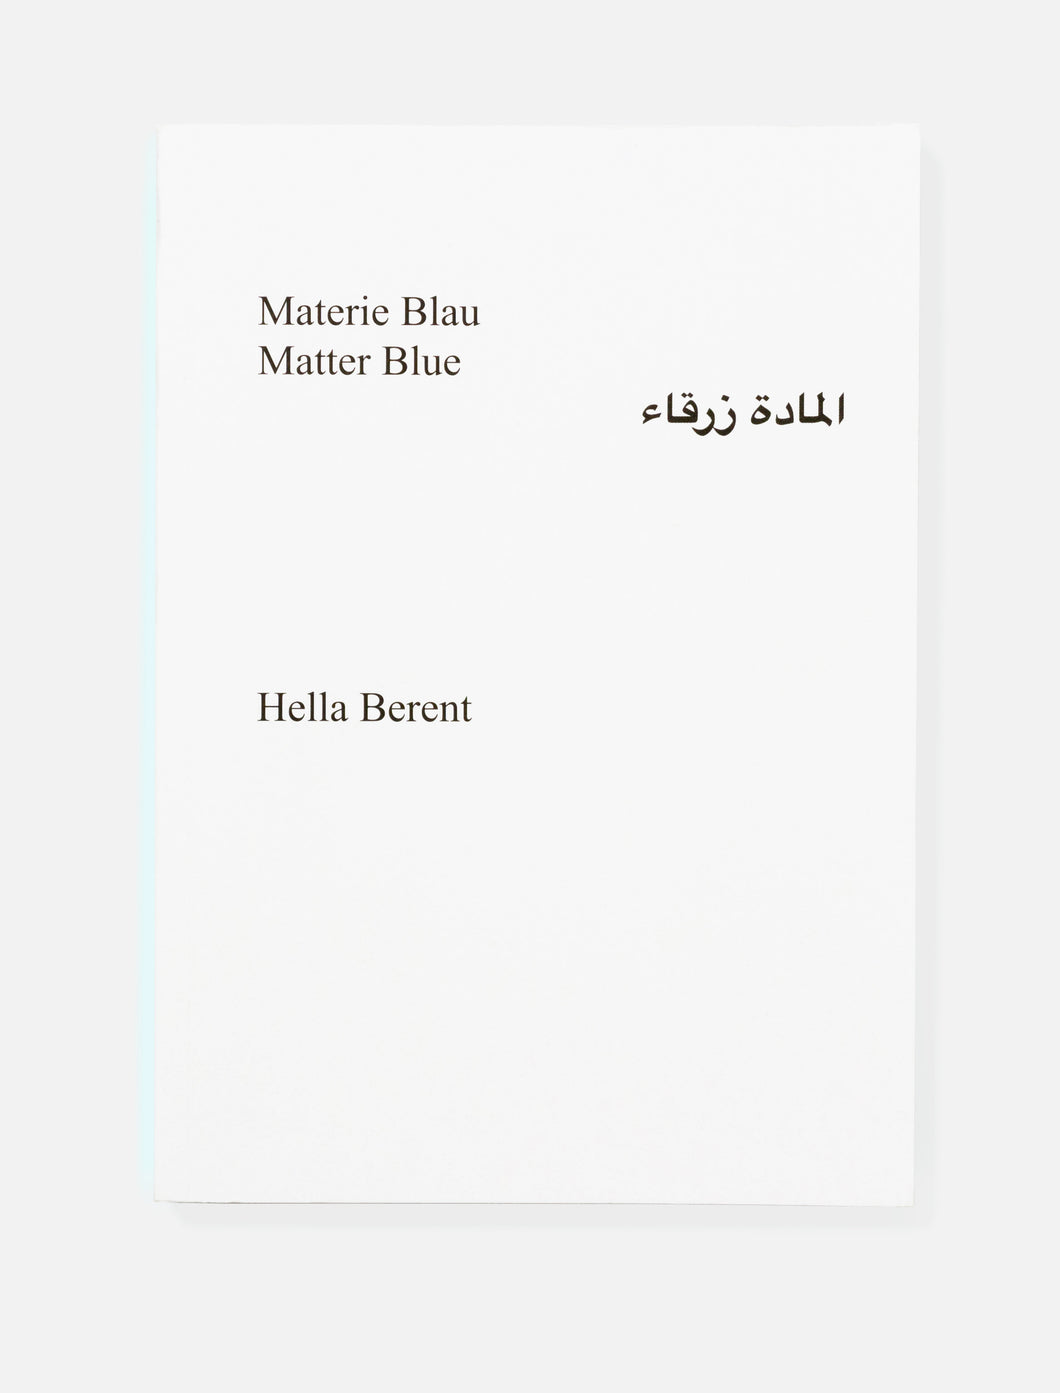 hella berent – materie blau, matter blue